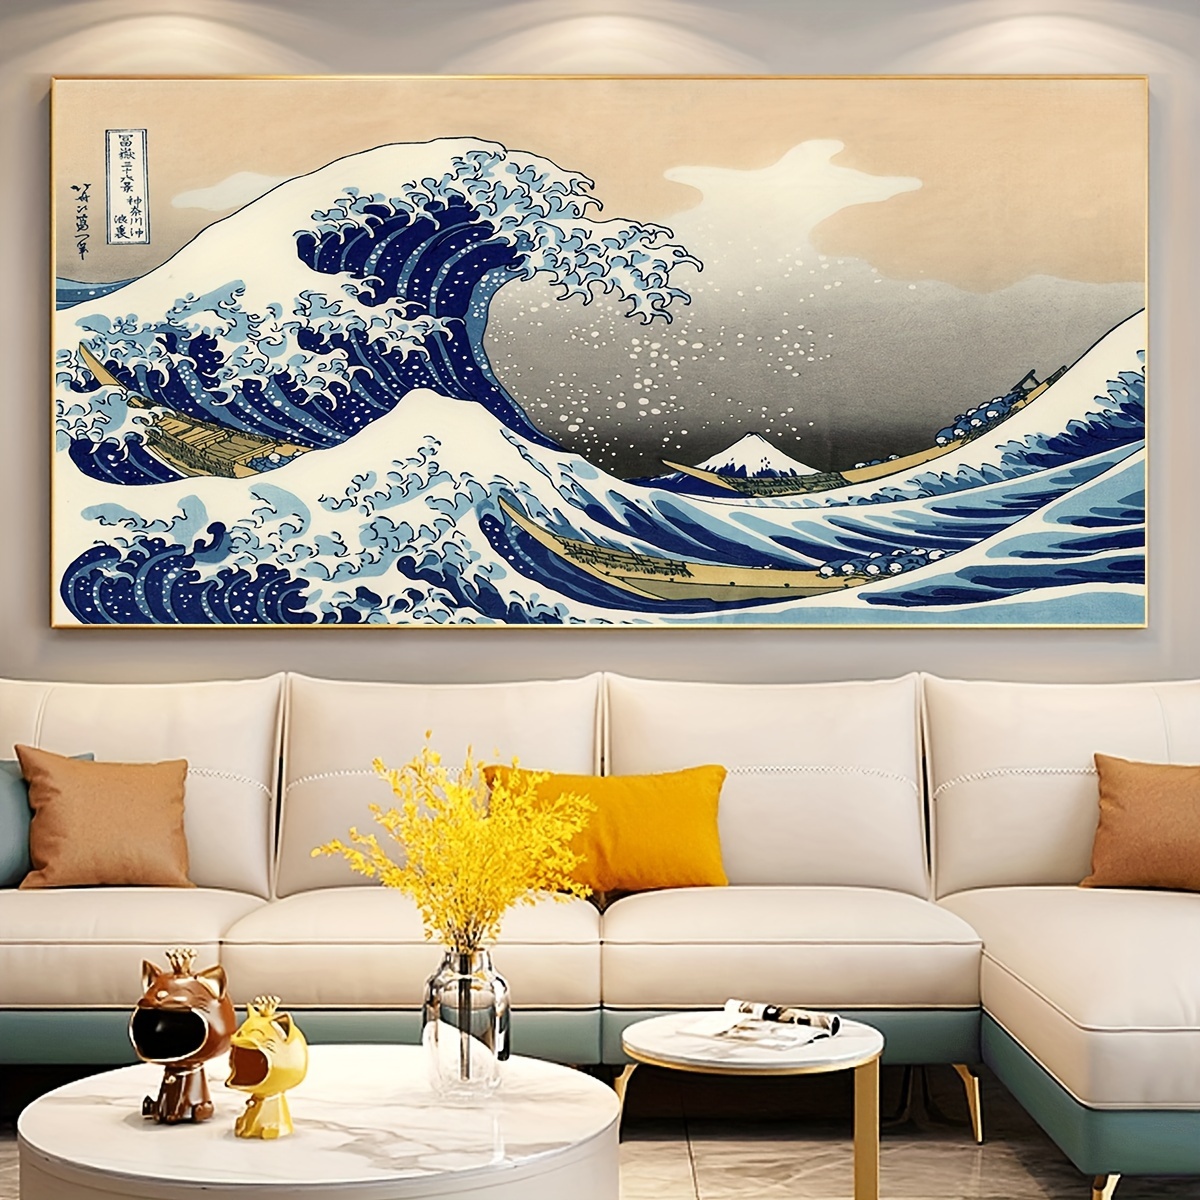 Décoration Murale Japonaise - Livraison Gratuite Pour Les Nouveaux